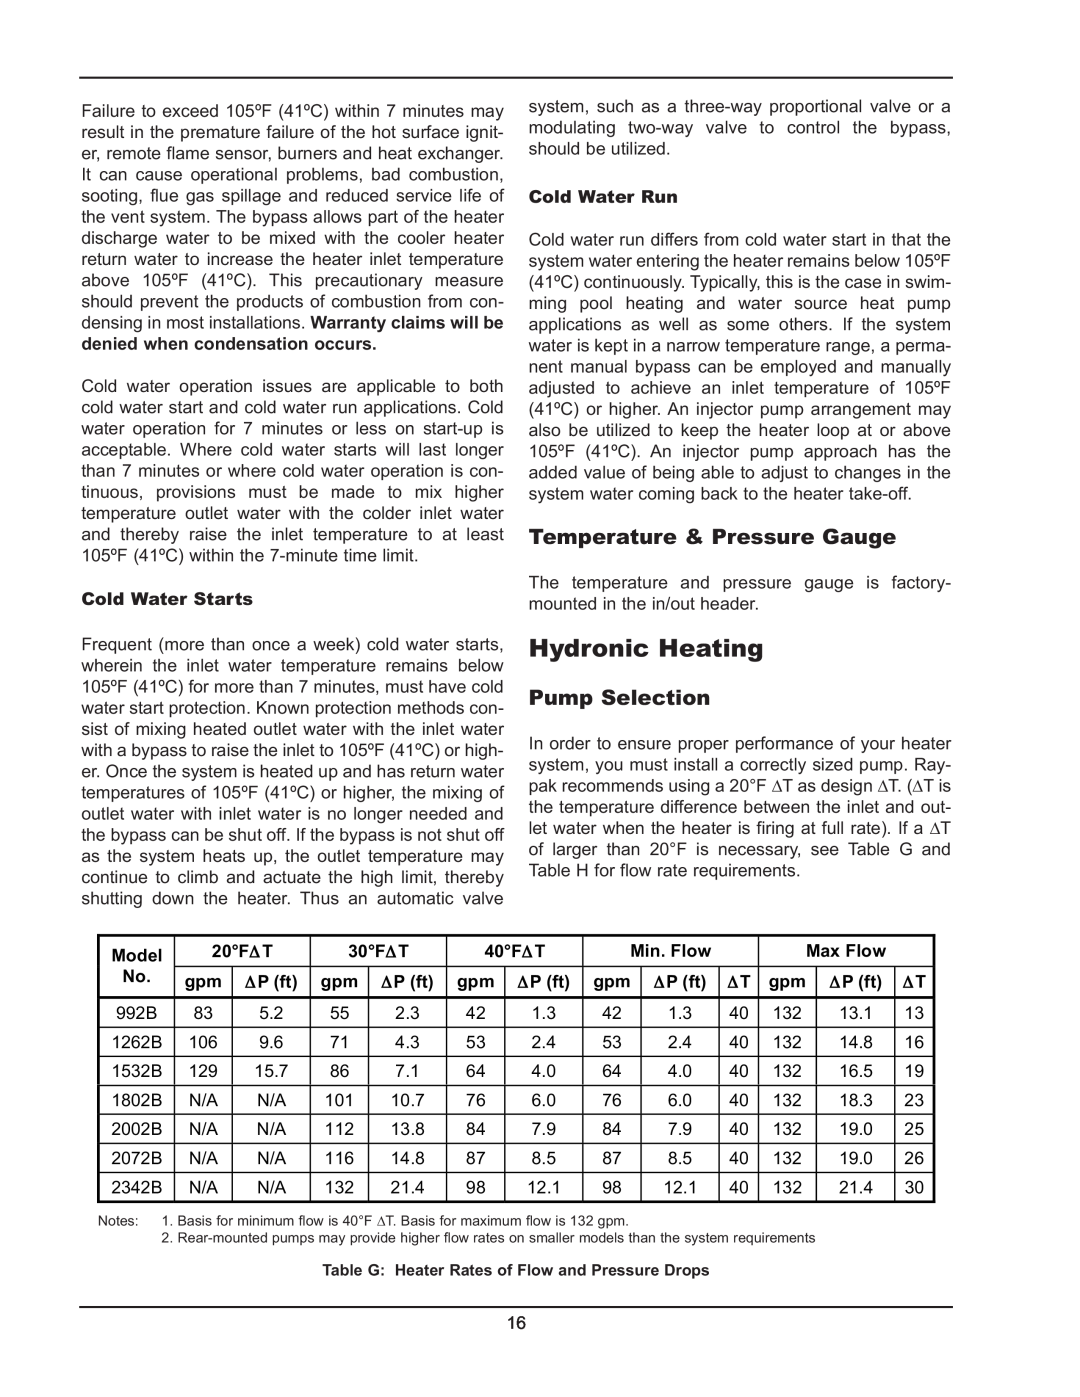 Raypak 992B-1262B manual Hydronic Heating, Temperature & Pressure Gauge, Pump Selection 